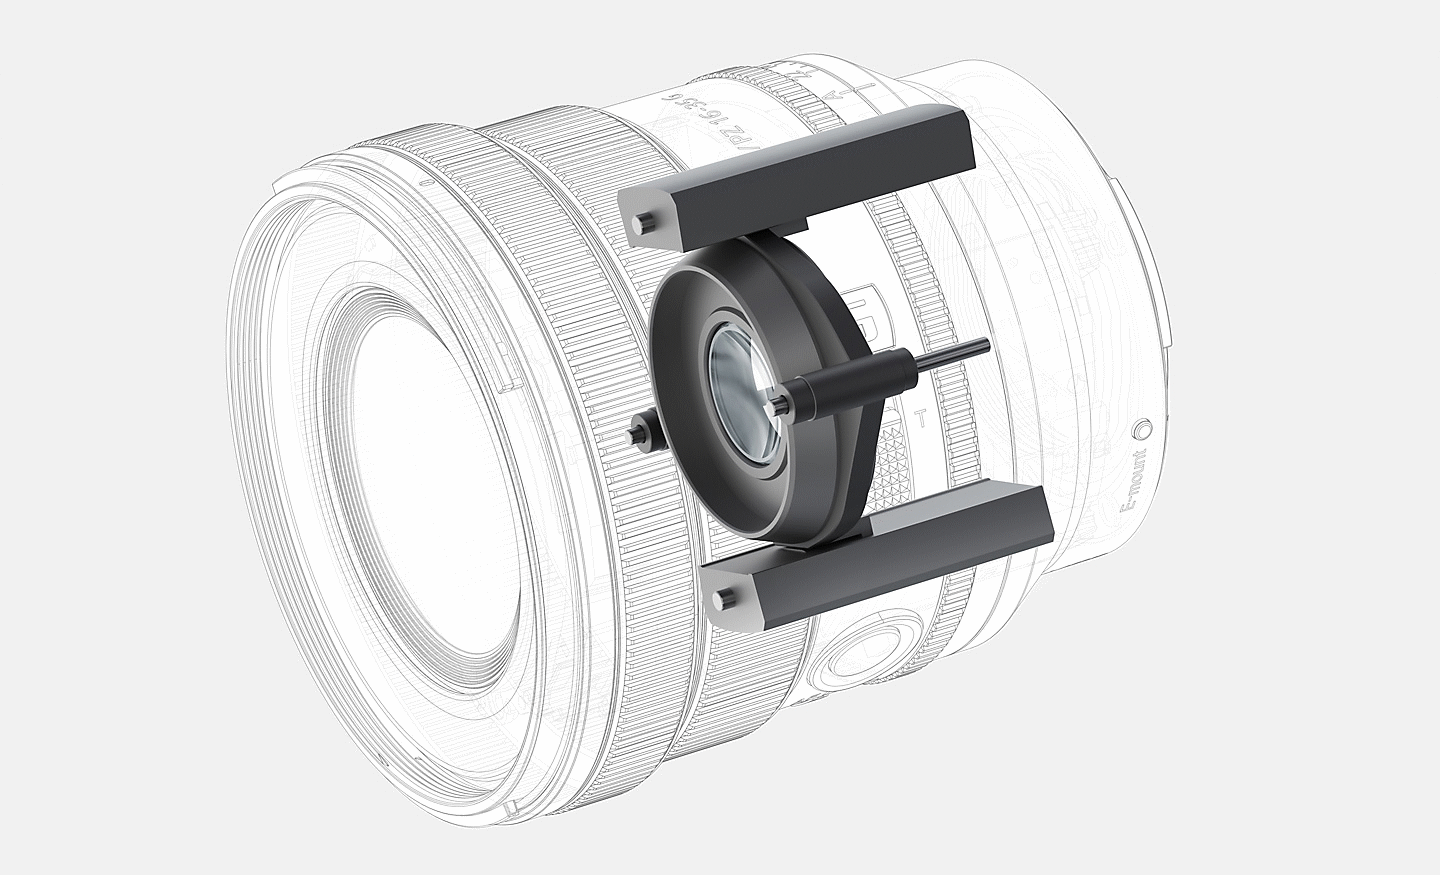 Ilustracija konstrukcije XD linearnih motora za sistem automatskog fokusiranja